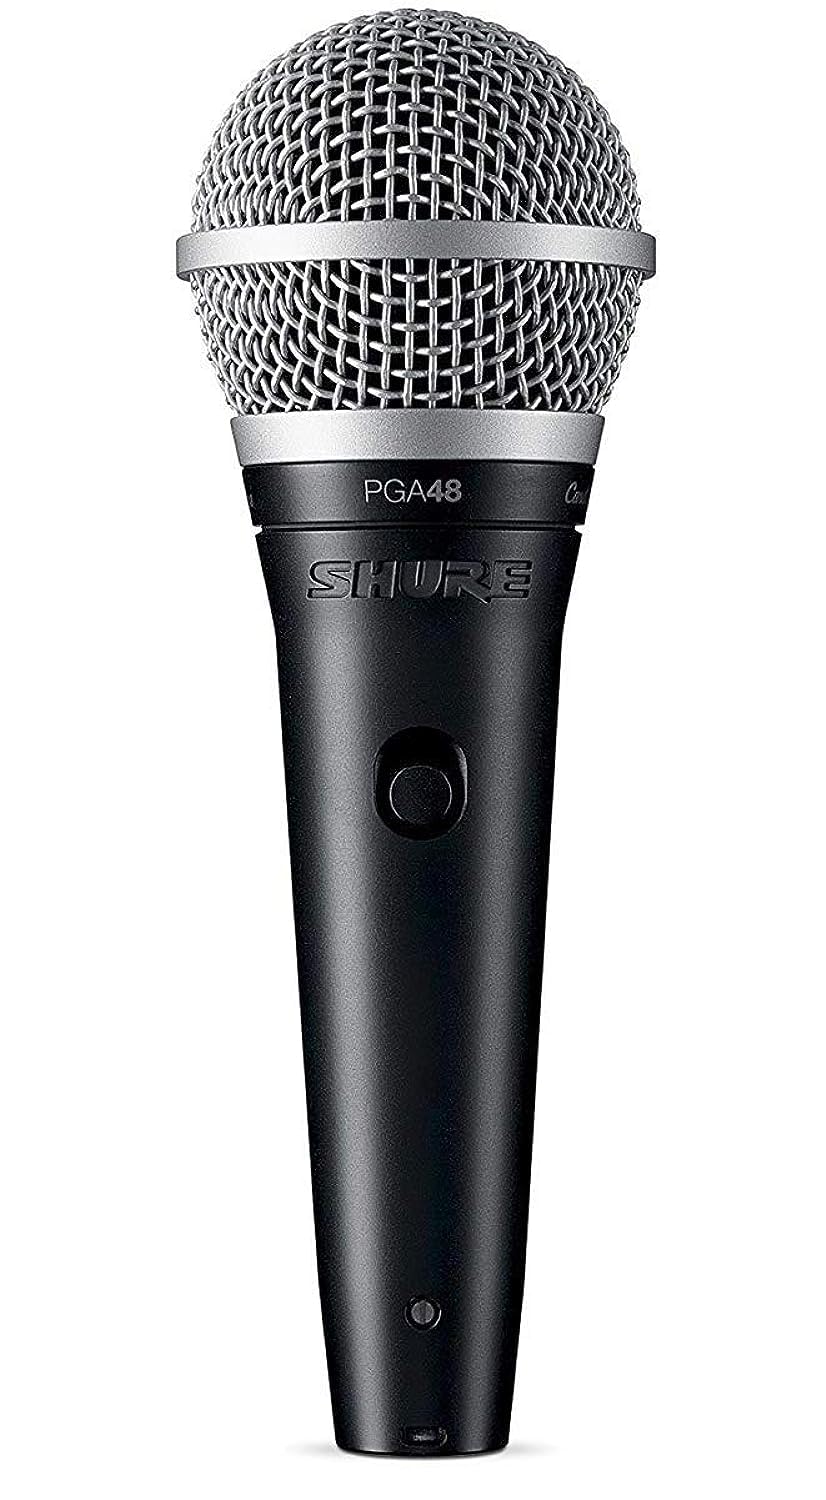 Achat Shure PGA48 Microphone Dynamique - Microphone à Main pour Voix avec Configuration de Prise de Son Cardioïde, Interrupteur Marche/Arrêt Discret, Câble XLR à XLR de 15 Pieds (Pga48-Xlr-E) NEx0oSqRs juste de l´acheter